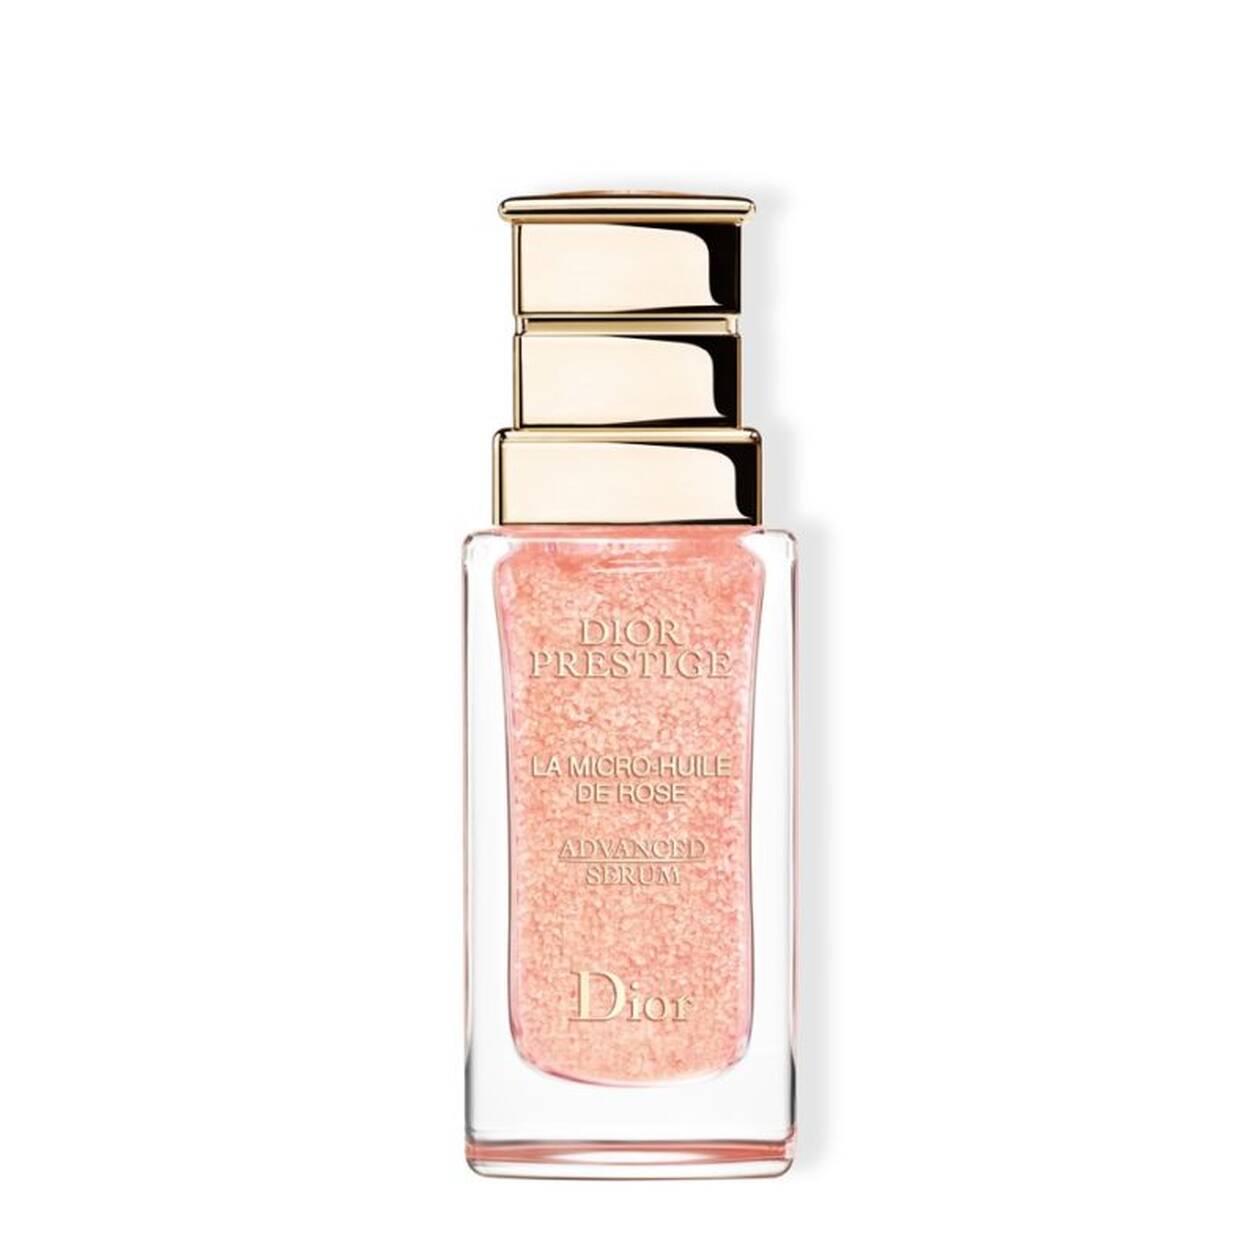 Dior, Prestige Micro Oil de Rose Advanced Serum. 